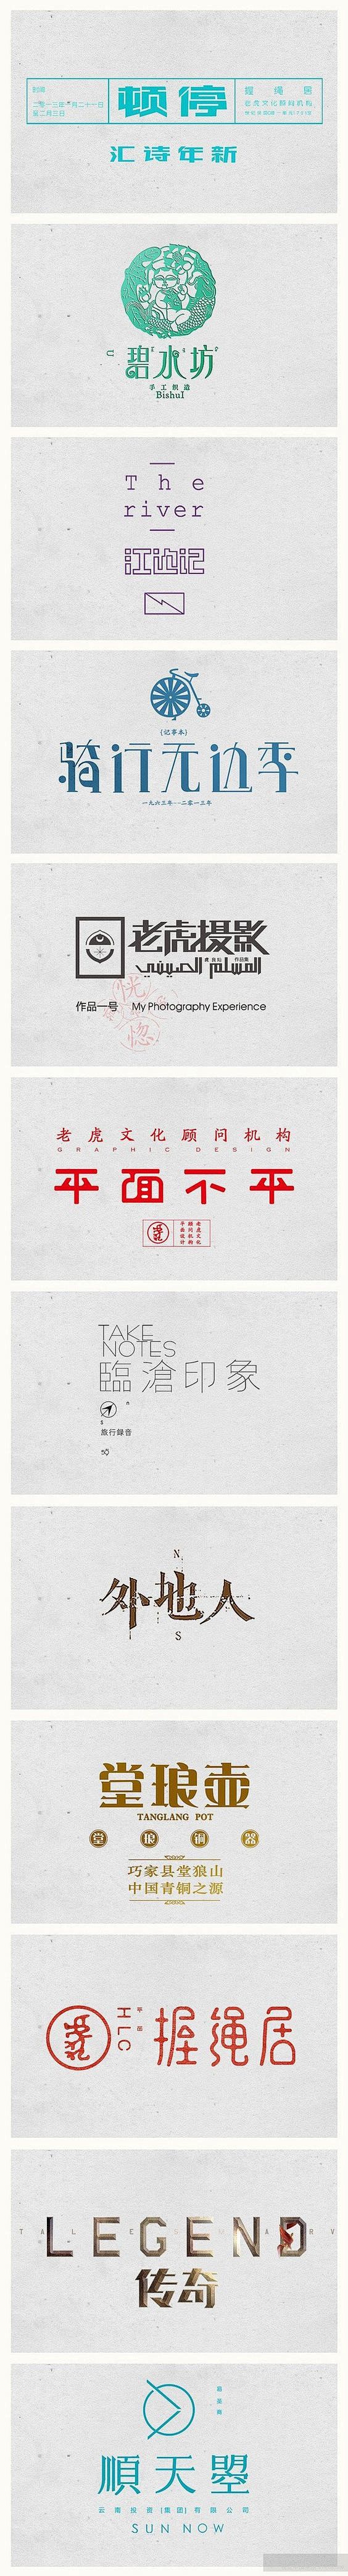 一组优秀中文字体设计欣赏: 